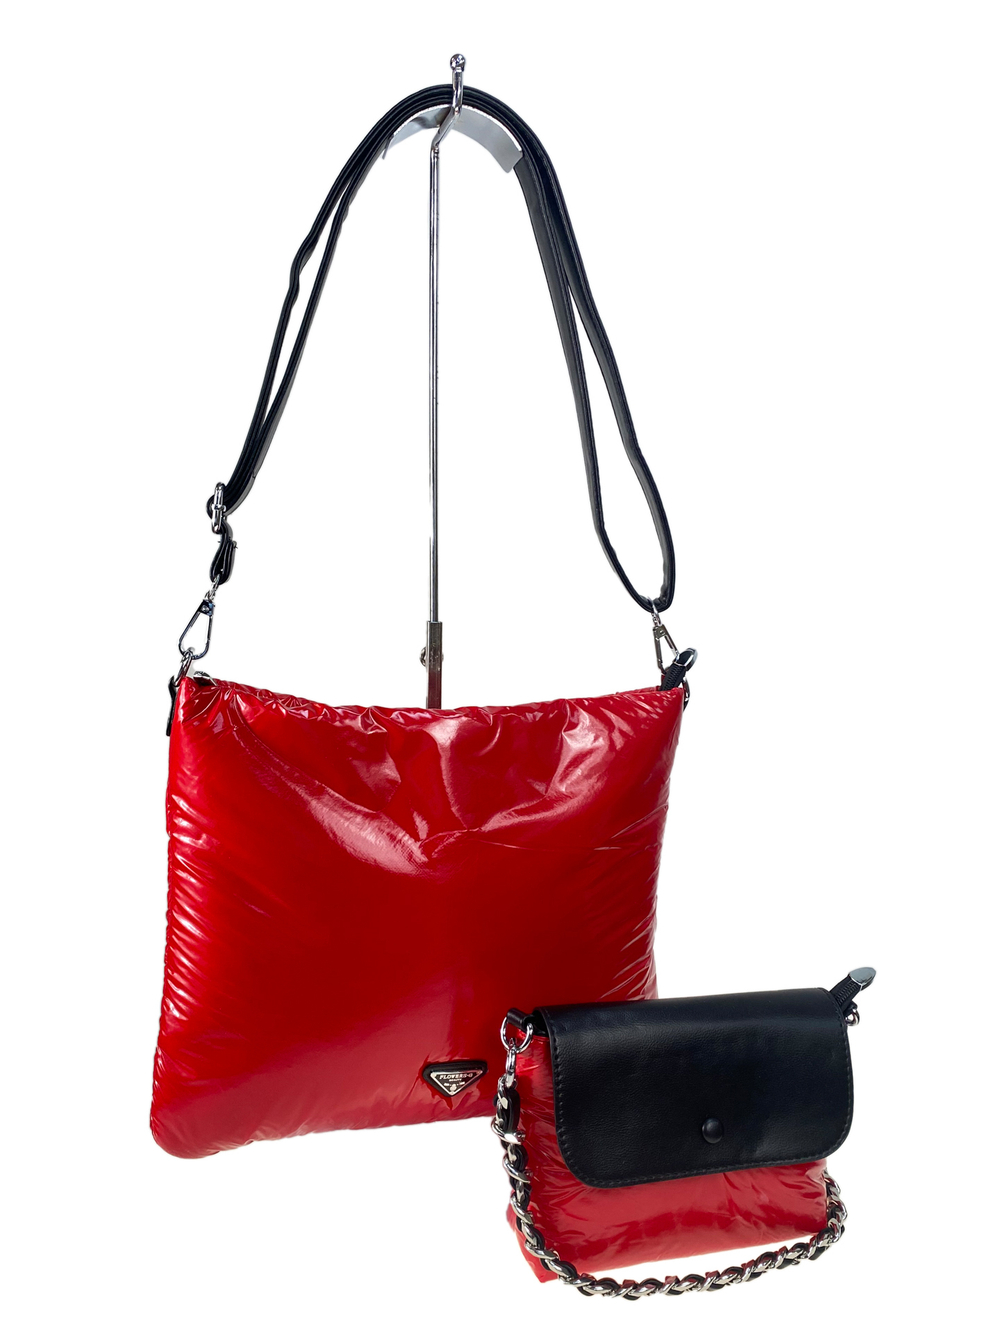 Cтильная женская сумка-шоппер из водоотталкивающей ткани, цвет красный